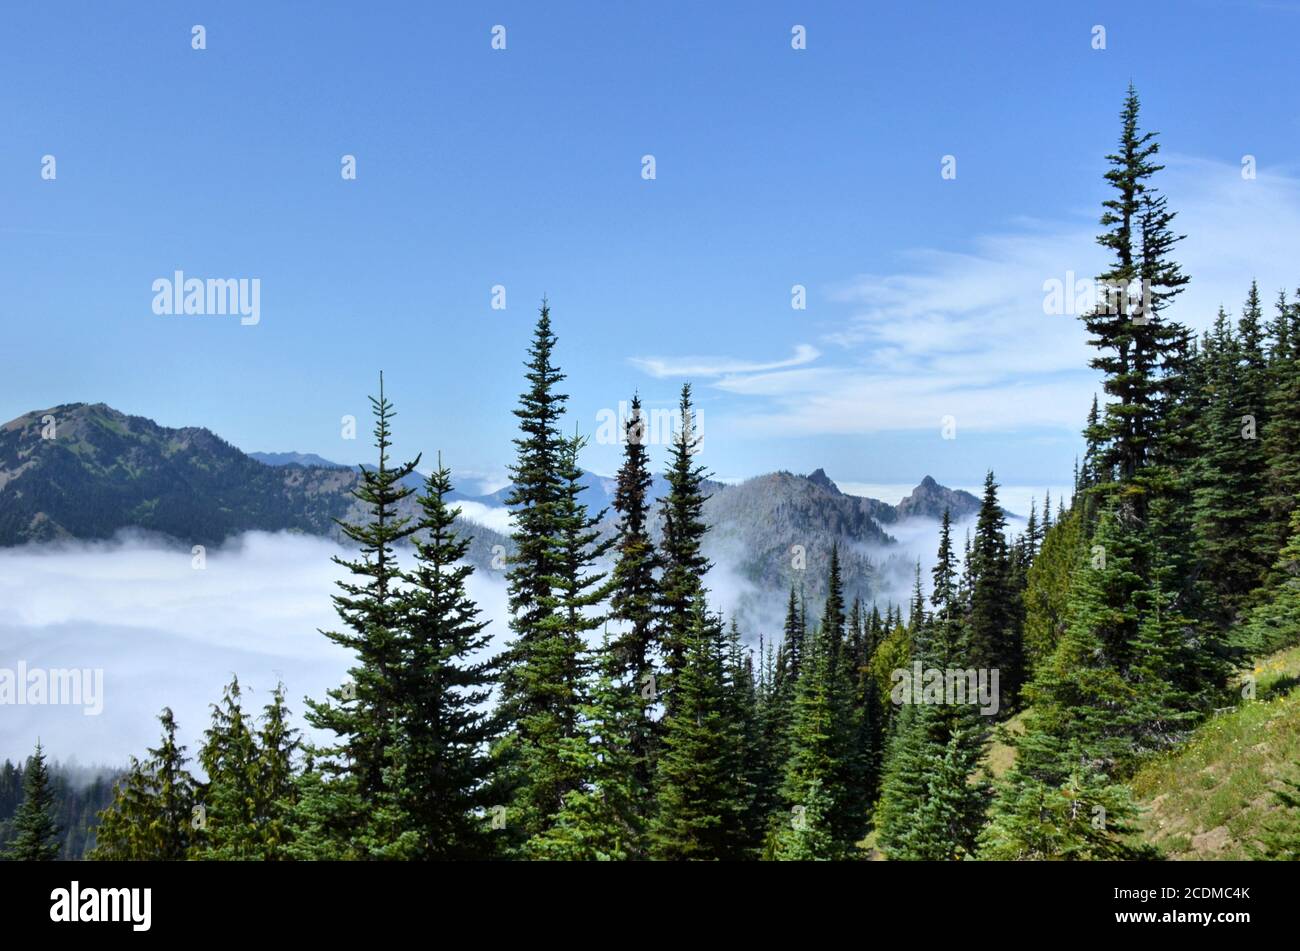 Les épinettes percent un ciel bleu au-dessus d'une vallée de montagne à couronne de nuages Dans le parc national olympique Banque D'Images